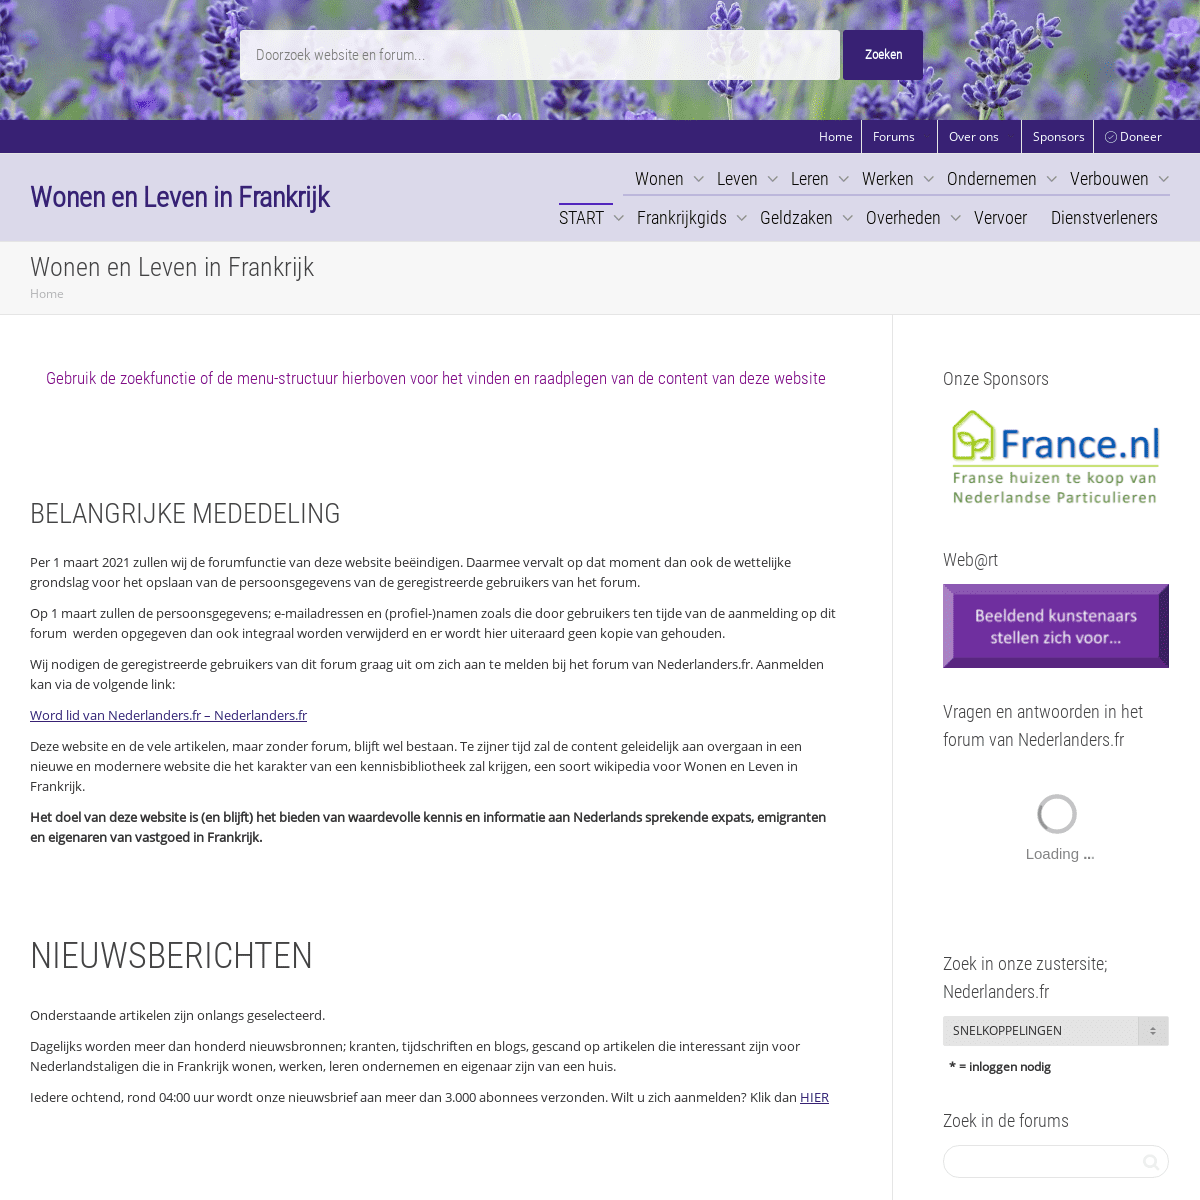 A complete backup of https://infofrankrijk.com